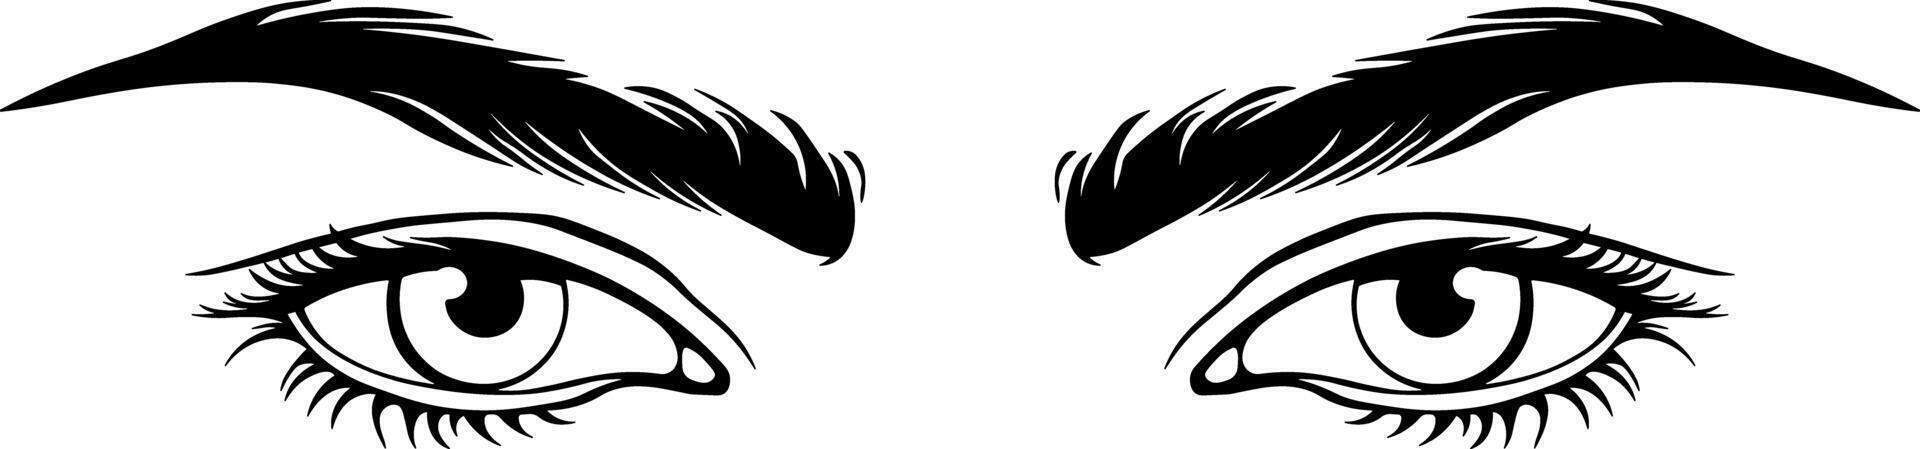 zwart silhouet van ogen met wenkbrauwen vector